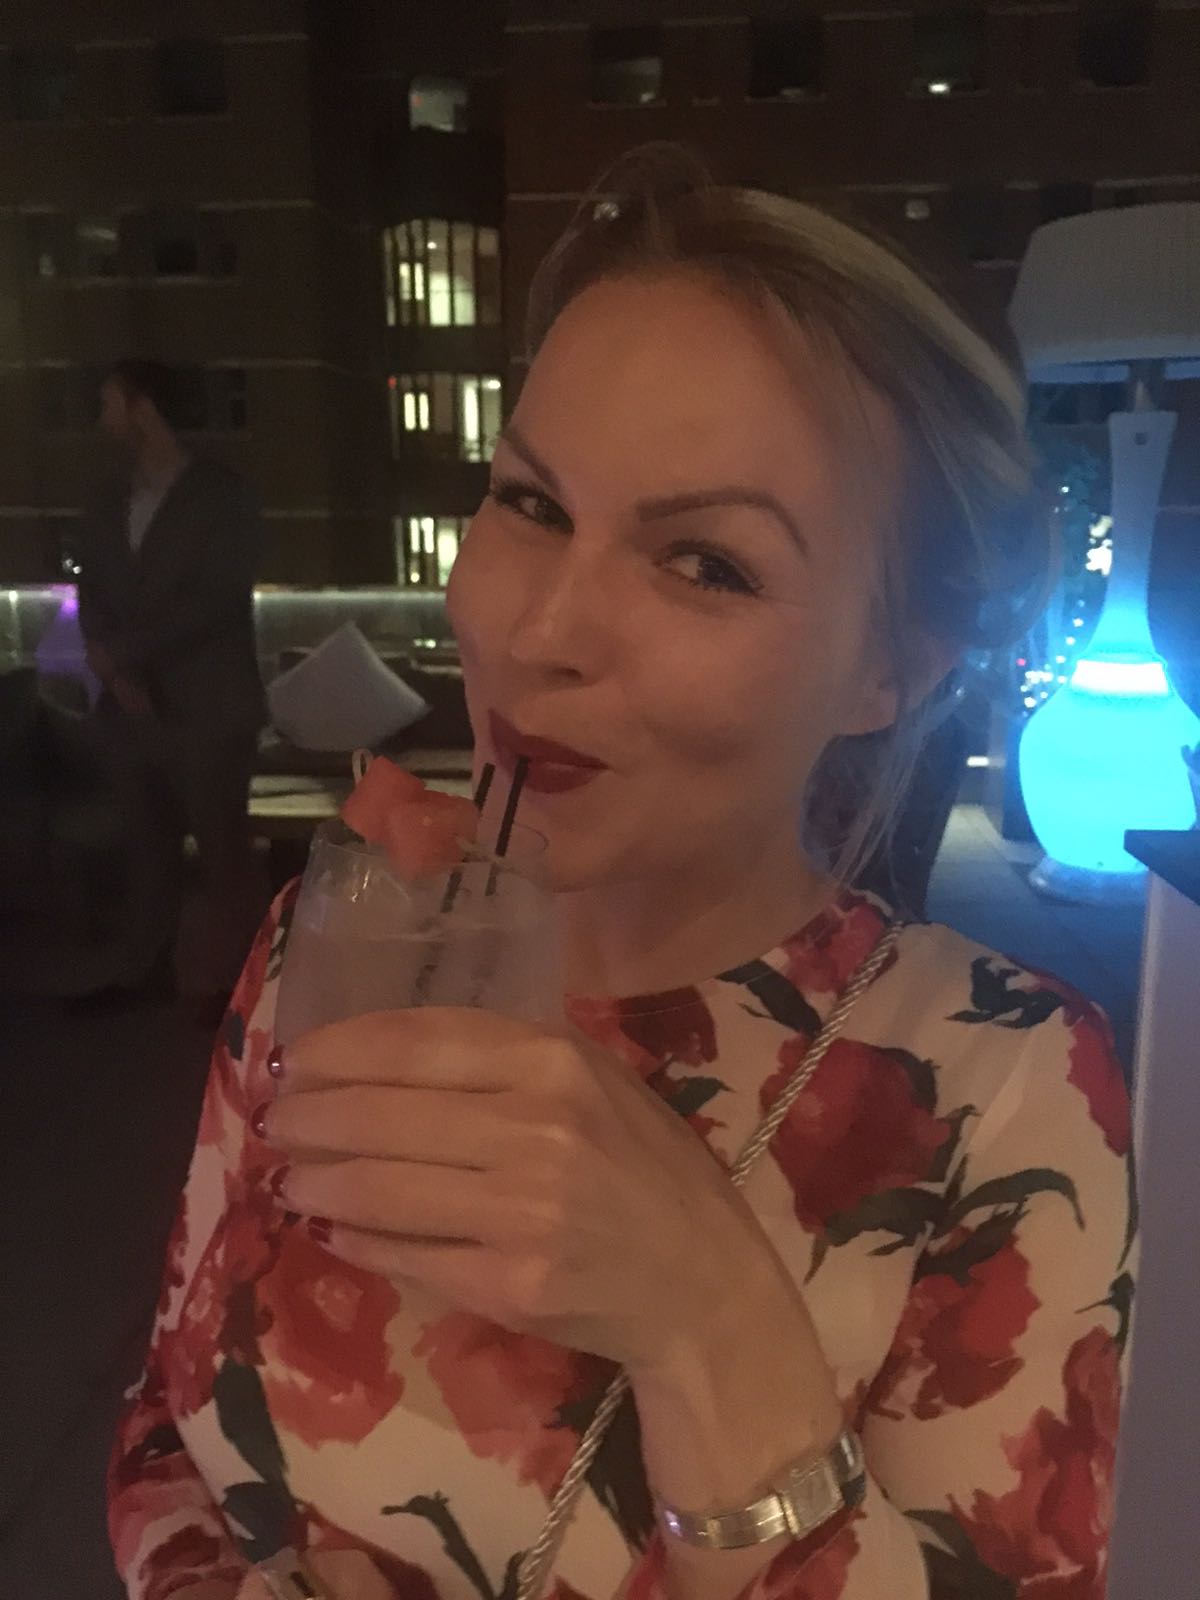 Editorin Hannah testet das Envoy Hotel in Bosten. Editorin Hannah trinkt einen Cocktail.